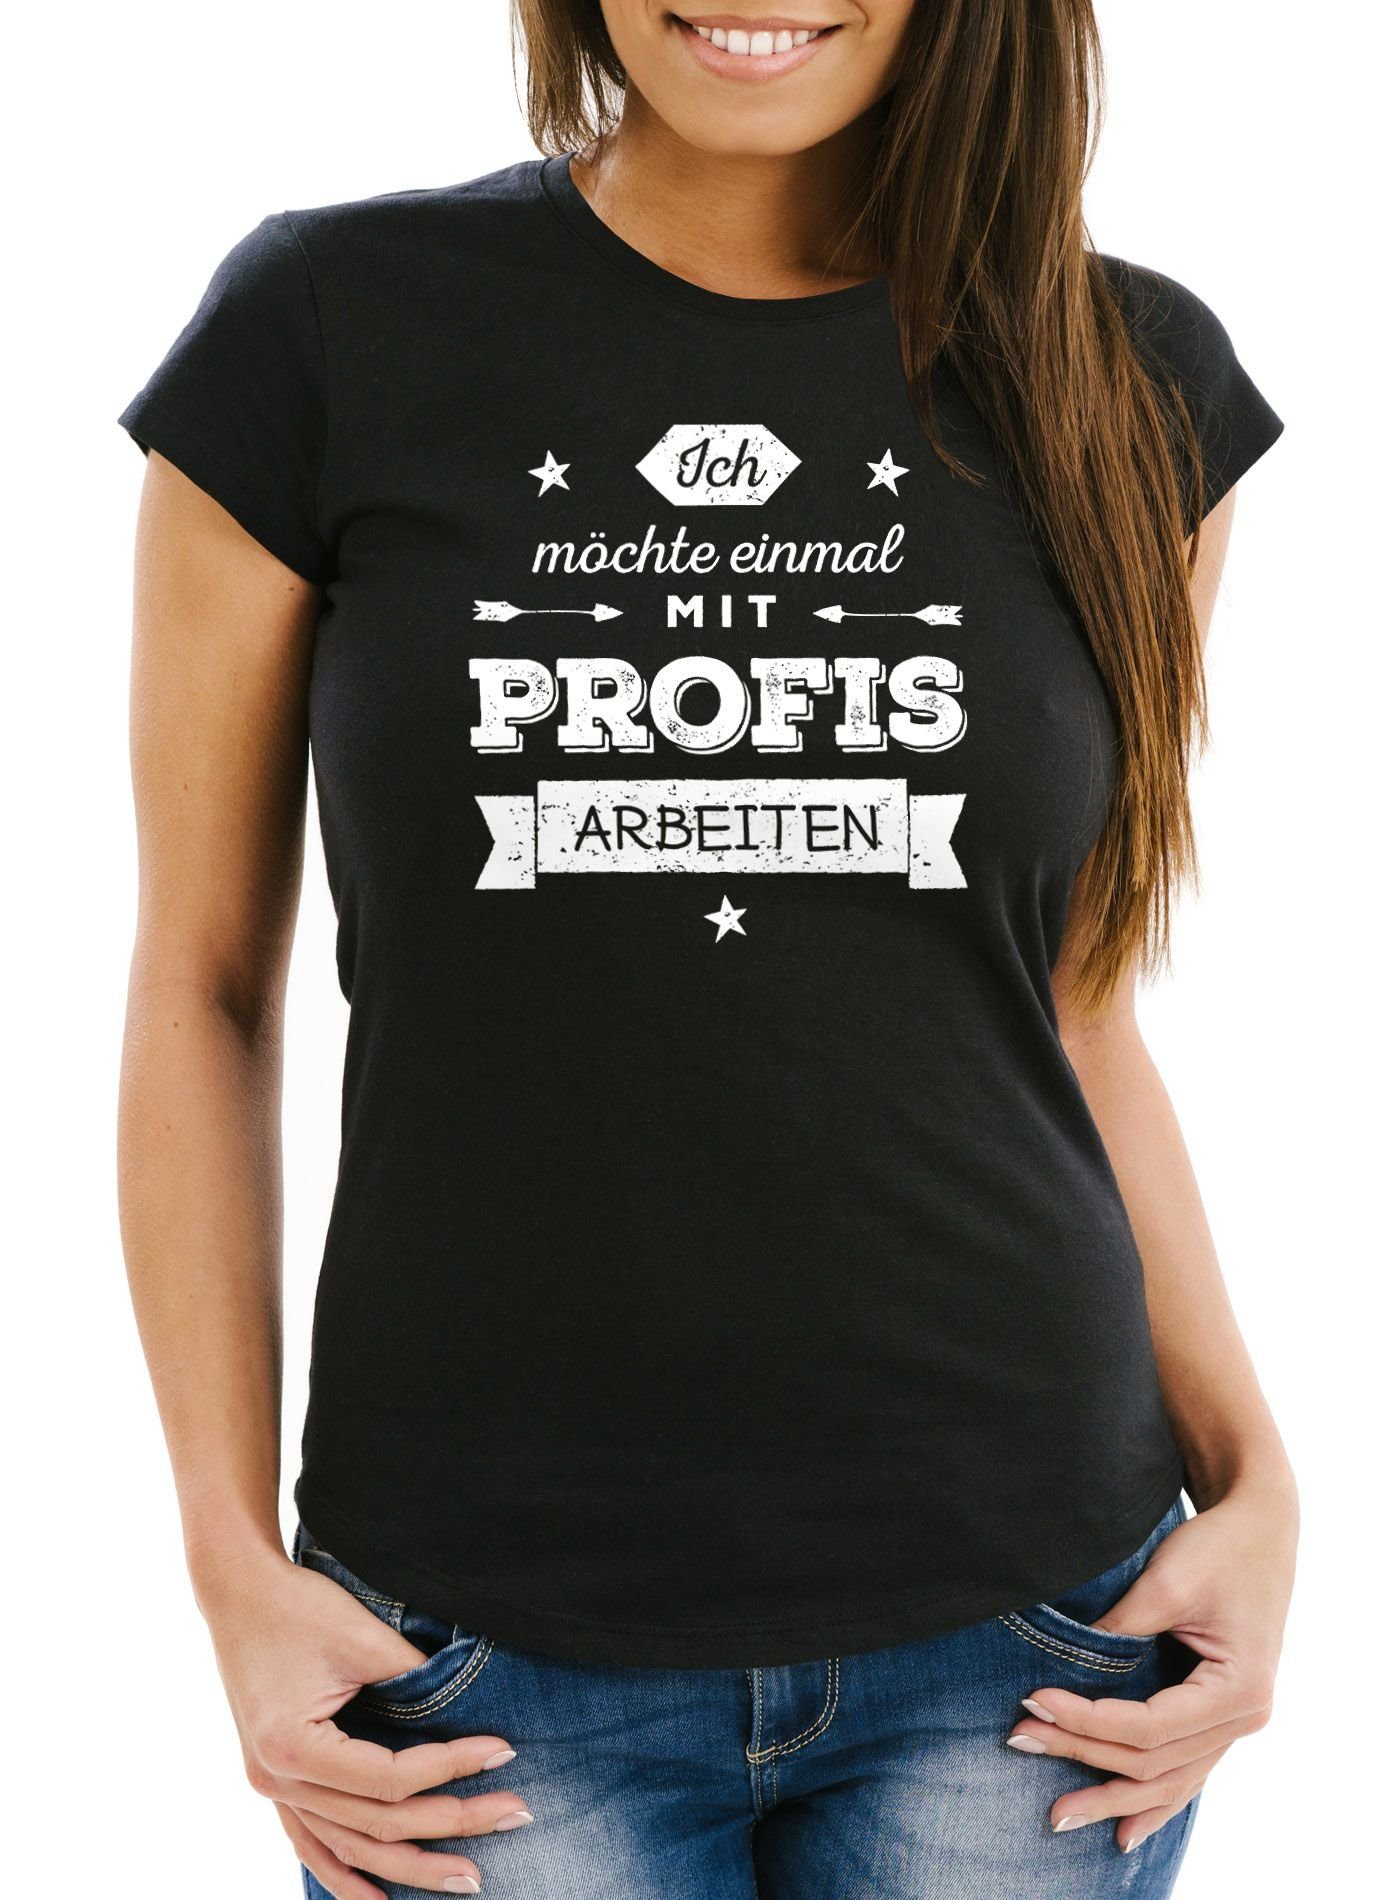 MoonWorks Print-Shirt Profis mit möchte schwarz Moonworks® Ich Damen einmal T-Shirt Slim Print arbeiten mit Fit